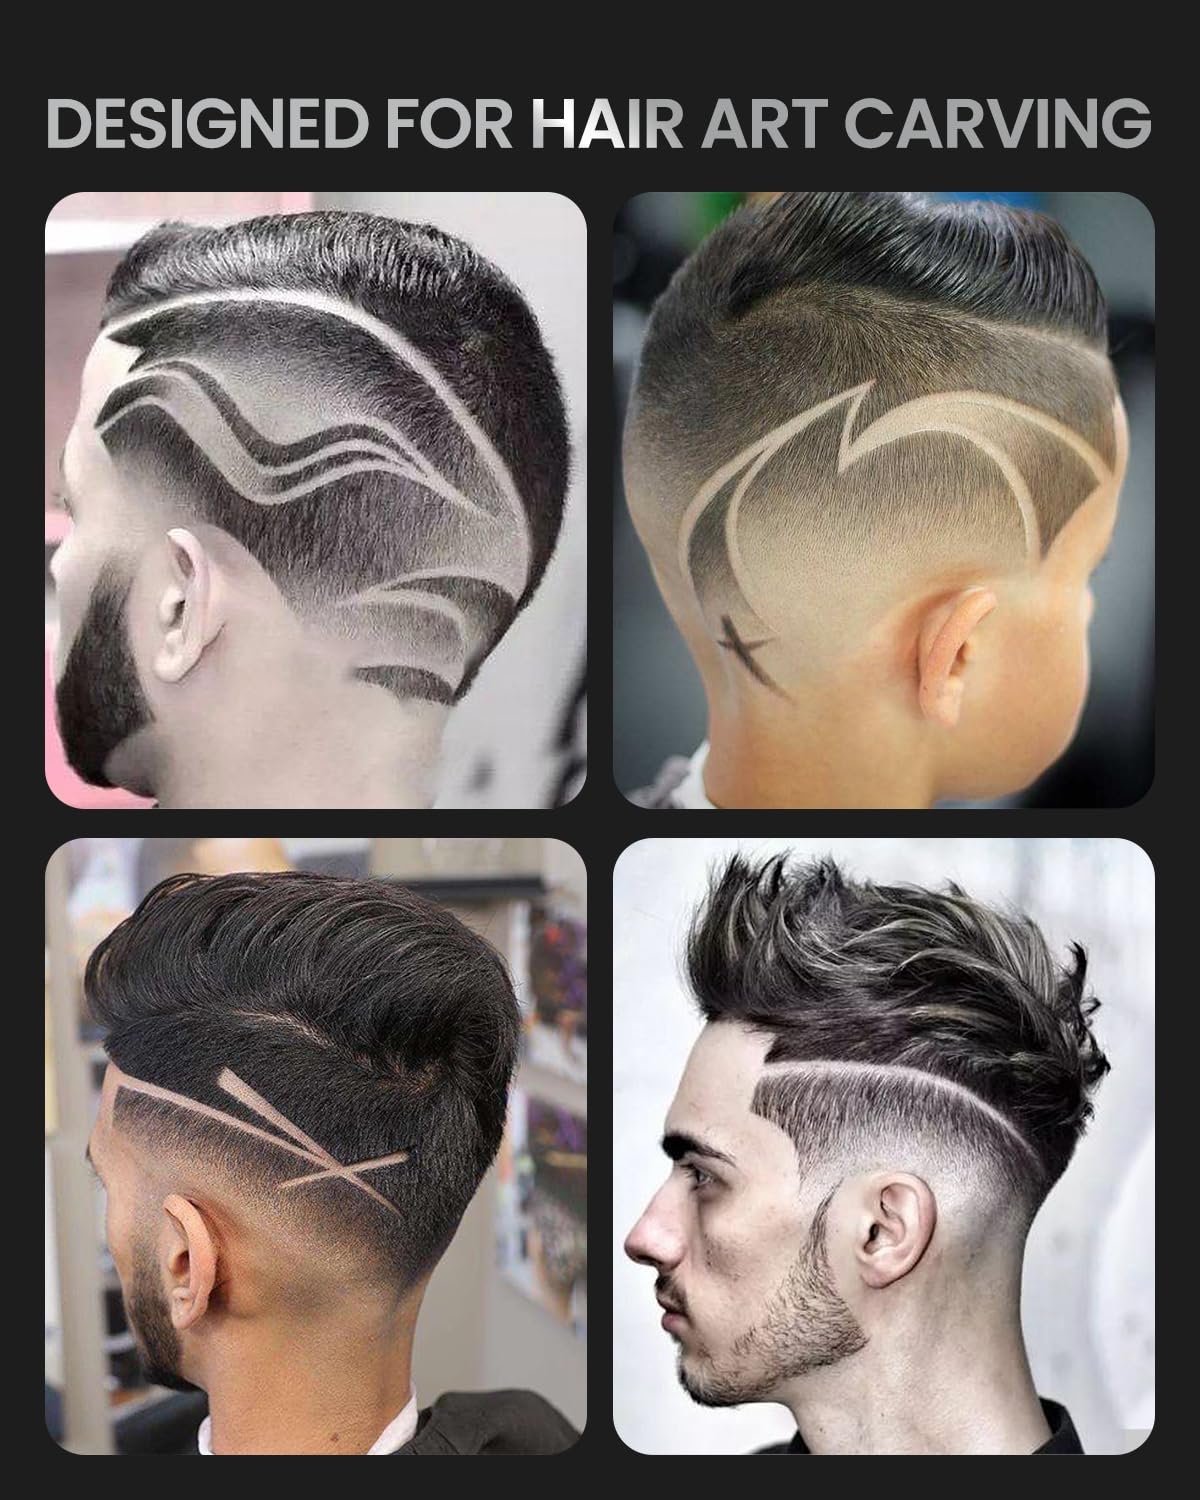 Vier Bilder zeigen aufwendige Haarkunst-Designs auf Männerköpfen. Jeder Haarschnitt zeichnet sich durch kreative, präzise Linien und Muster aus, die von einer Renpho DE Haarschneidemaschine Profi in das Haar rasiert werden, von wirbelnden Kurven bis hin zu kräftigen.